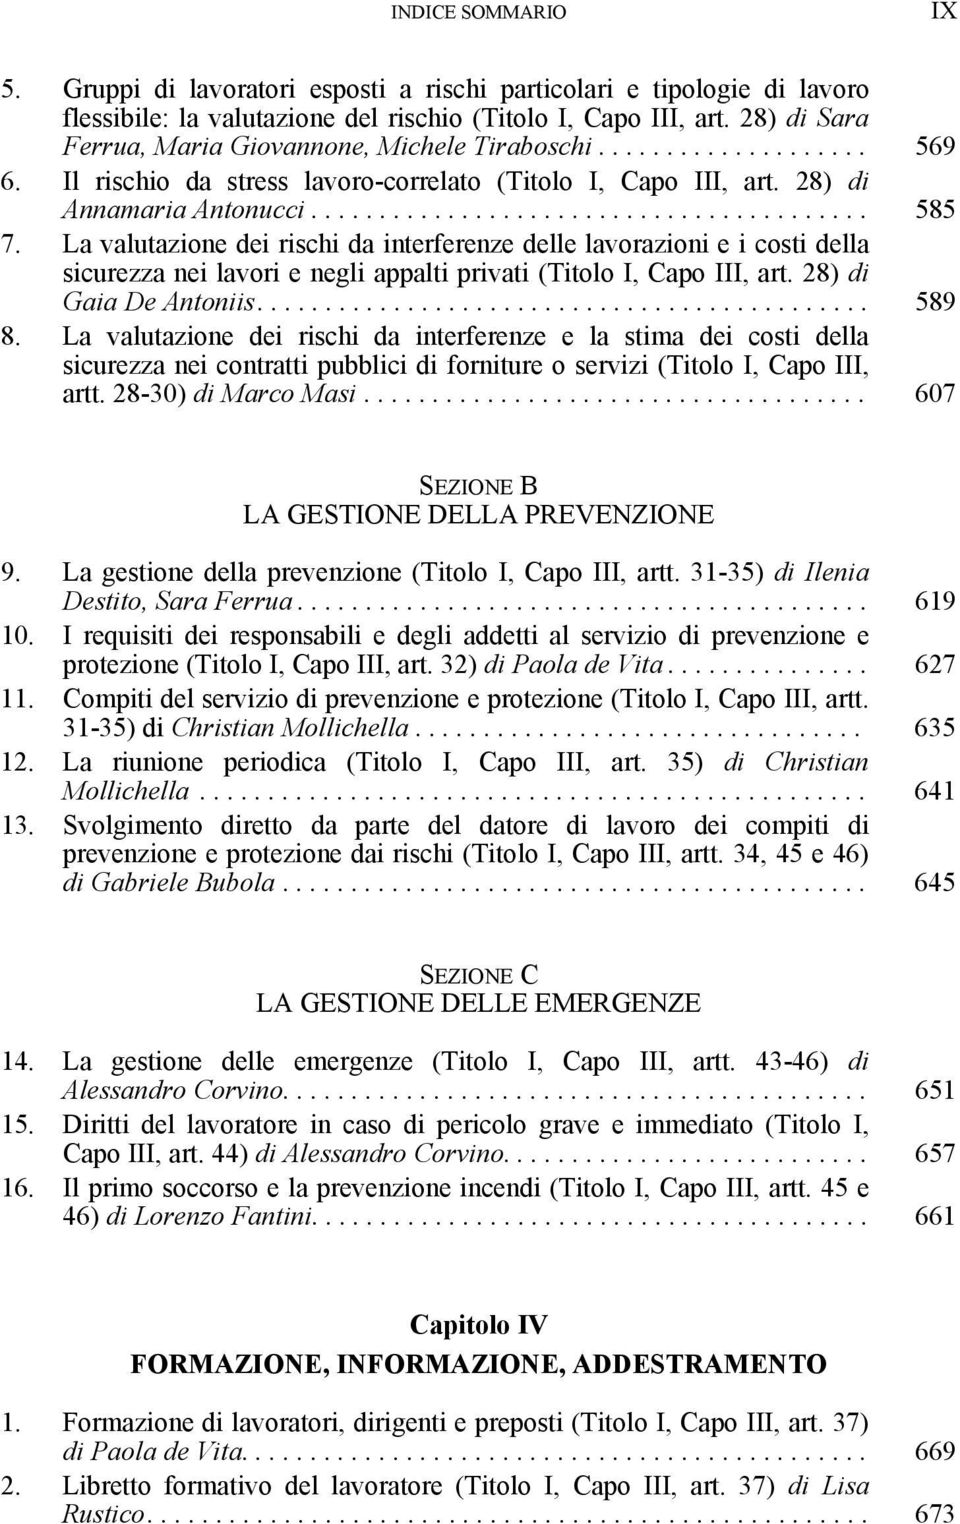 La valutazione dei rischi da interferenze delle lavorazioni e i costi della sicurezza nei lavori e negli appalti privati (Titolo I, Capo III, art. 28) di Gaia De Antoniis............................................. 589 8.